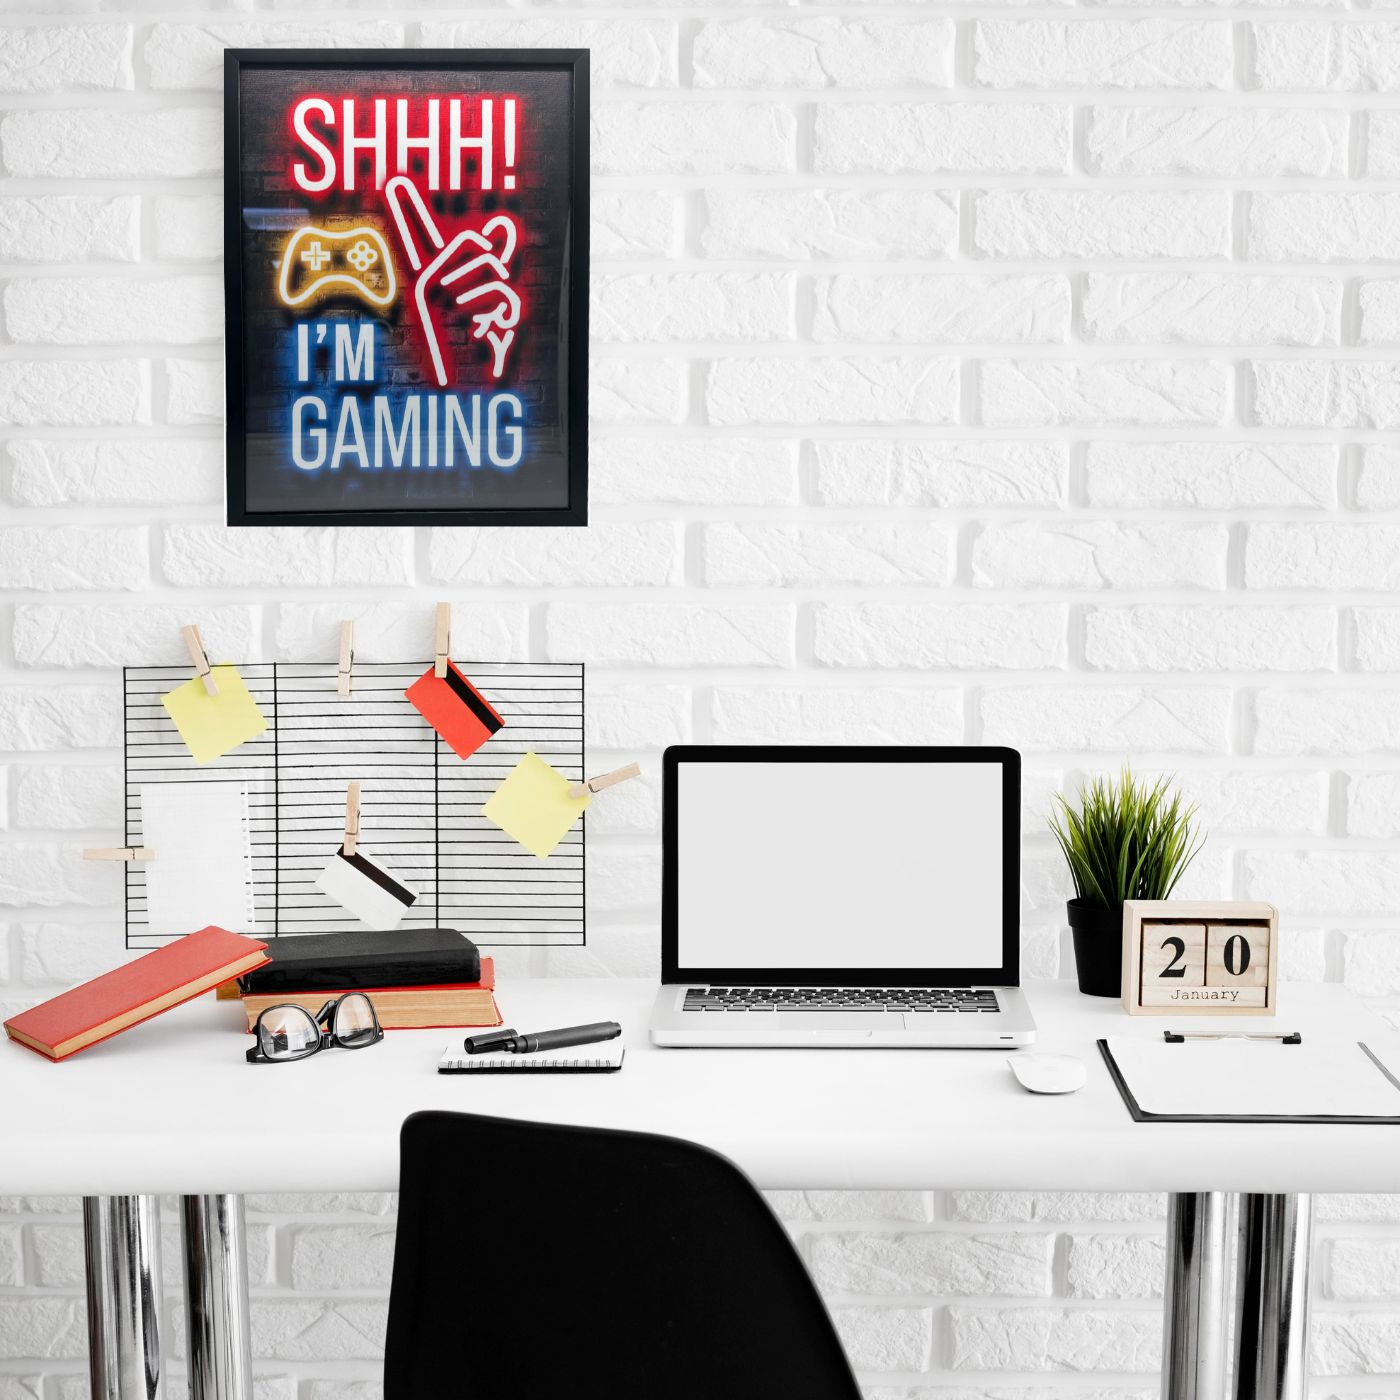 لوحة فنية جدارية لألعاب النيون النابضة بالحياة مع إطار - "Shhh! I'm Gaming"